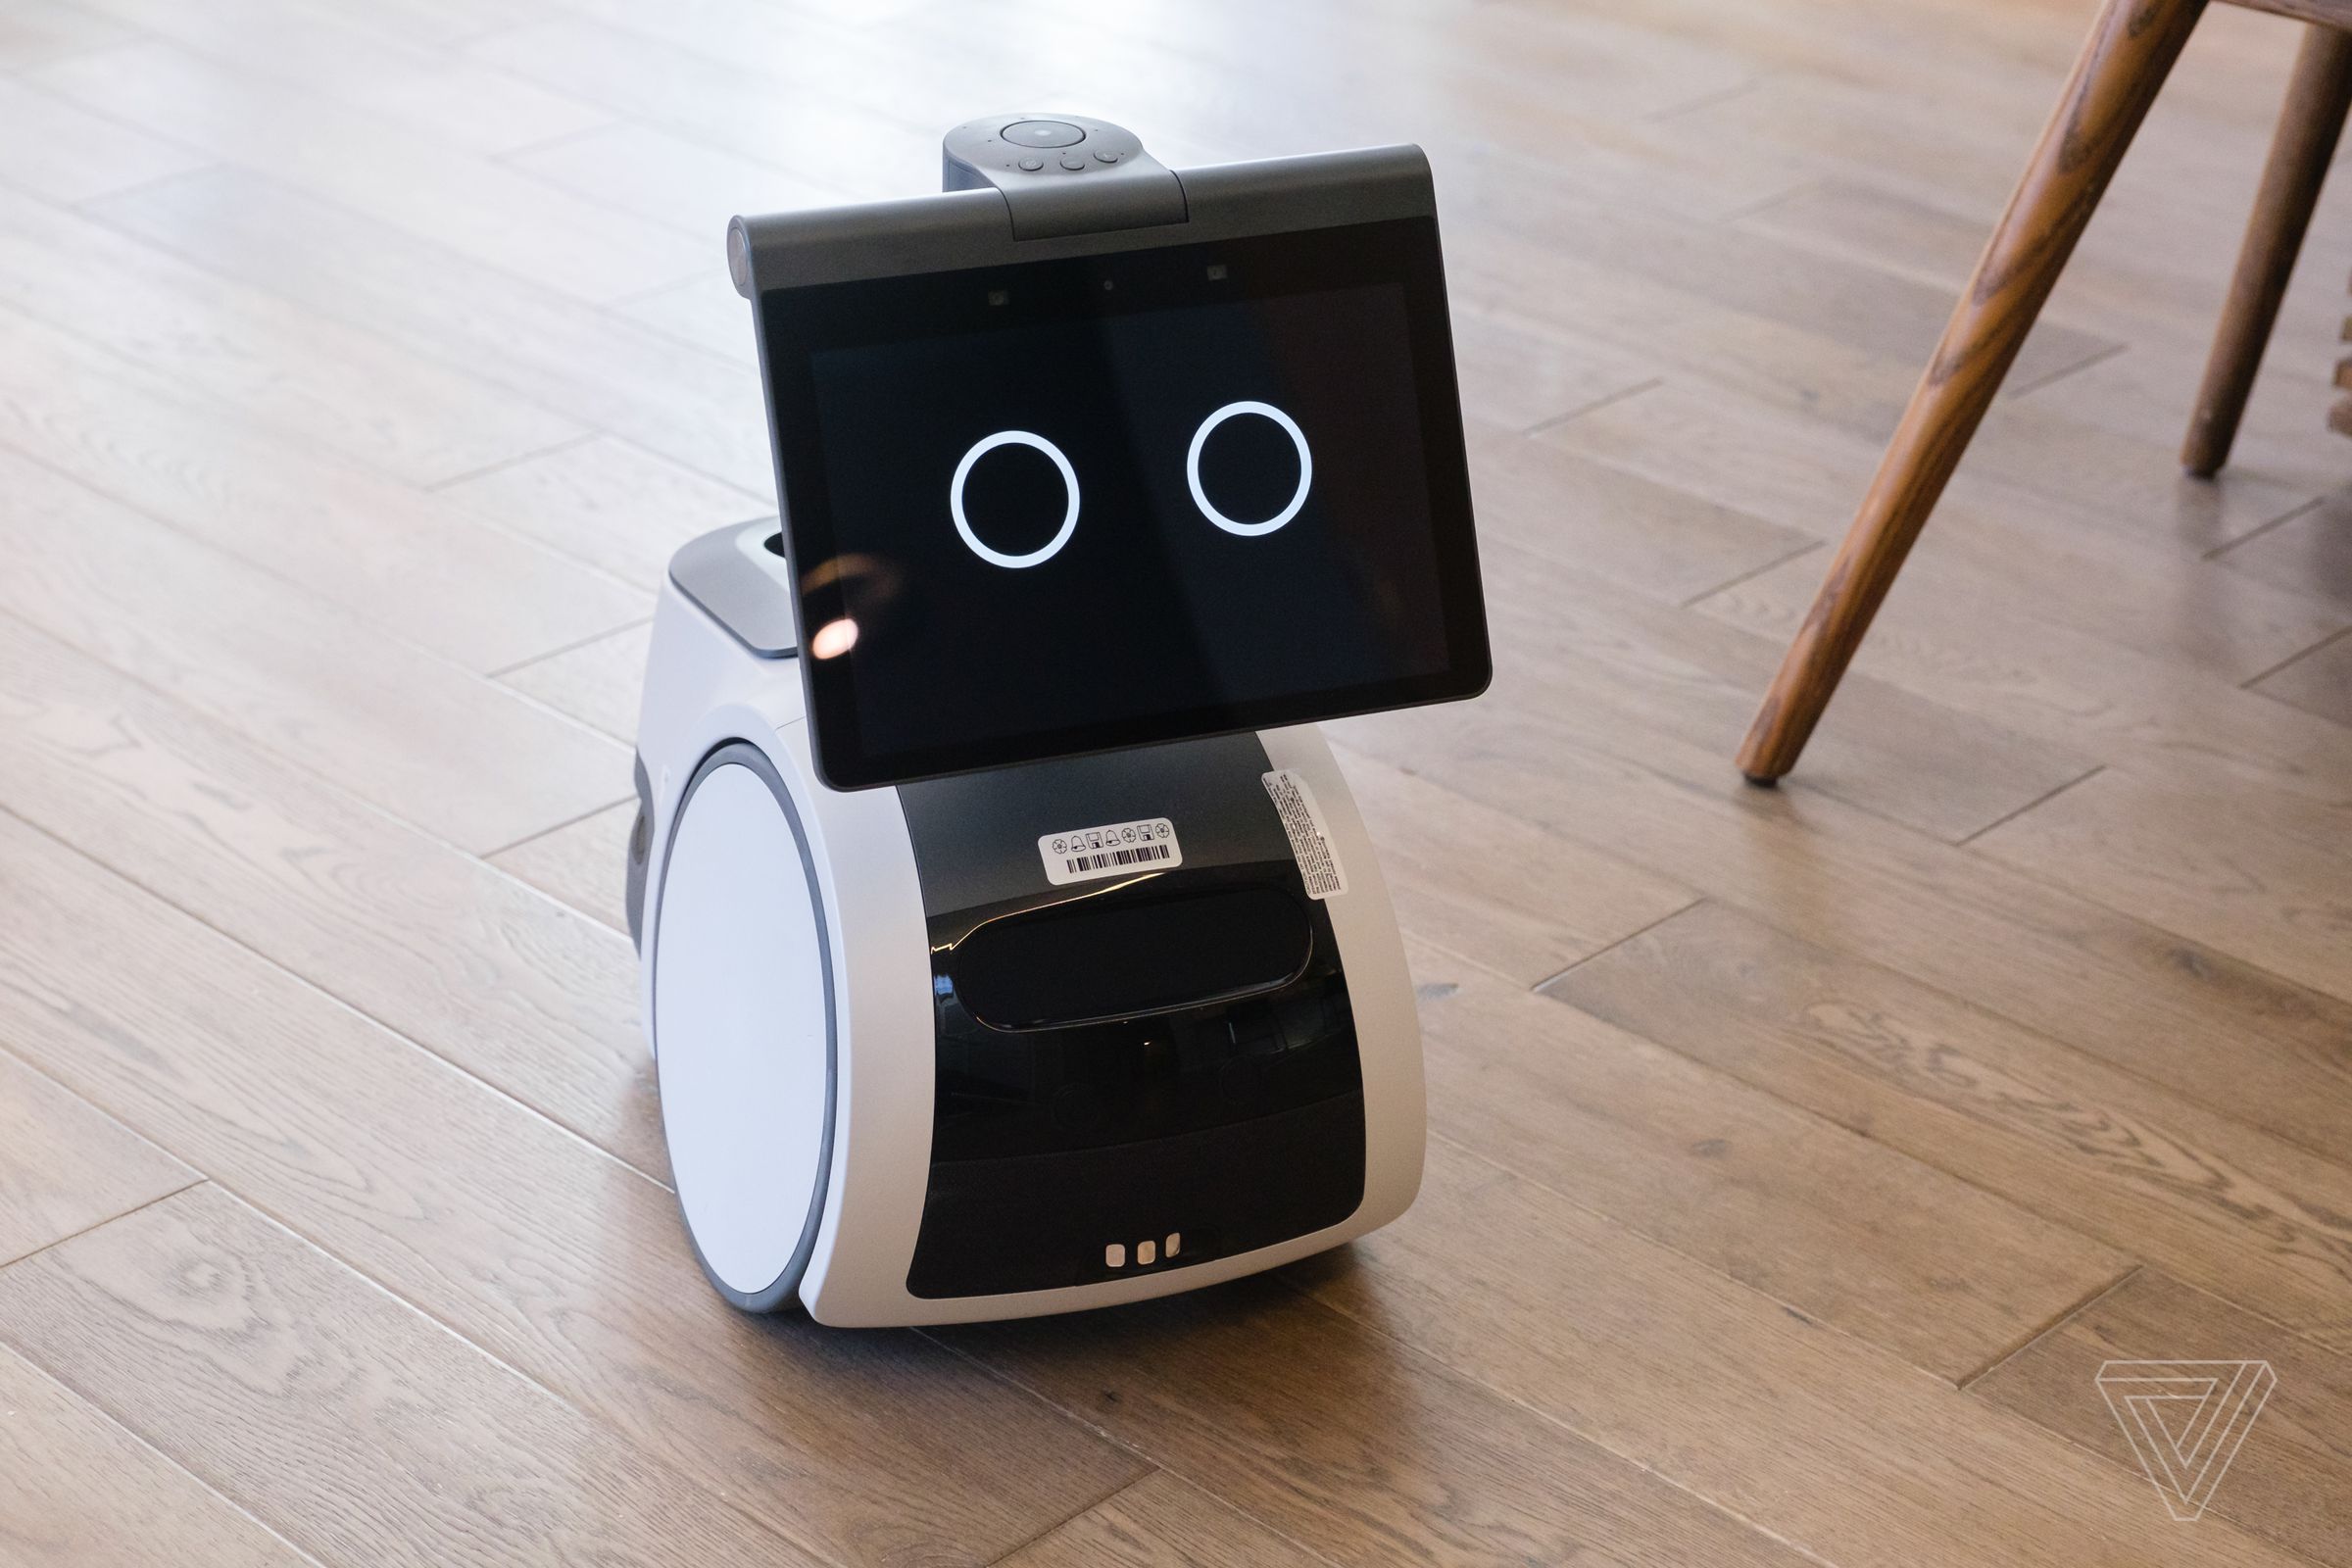 Amazon’s Astro home robot.